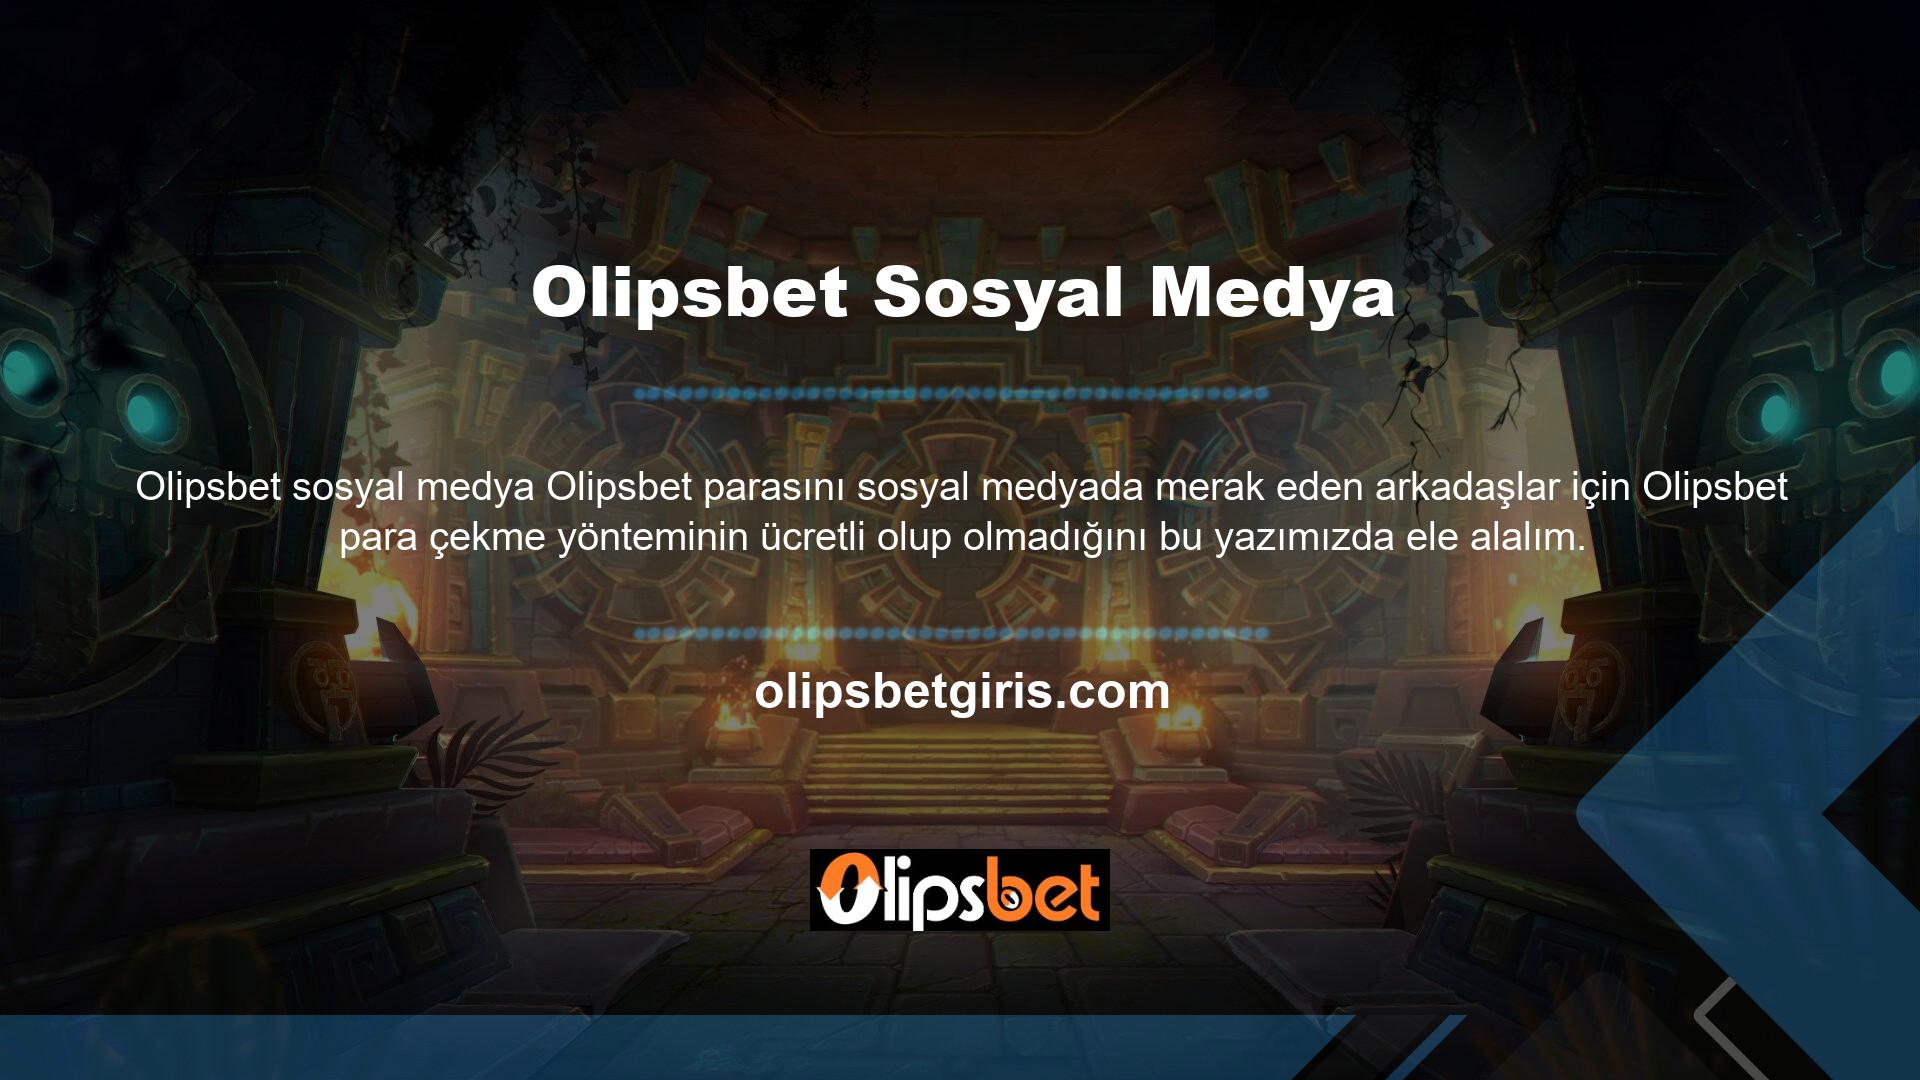 Olipsbet web sitesi, çekicilik açısından her zaman müşterinin ilgisini çeken, oldukça güvenilir ve kaliteli bahisçilerden biridir